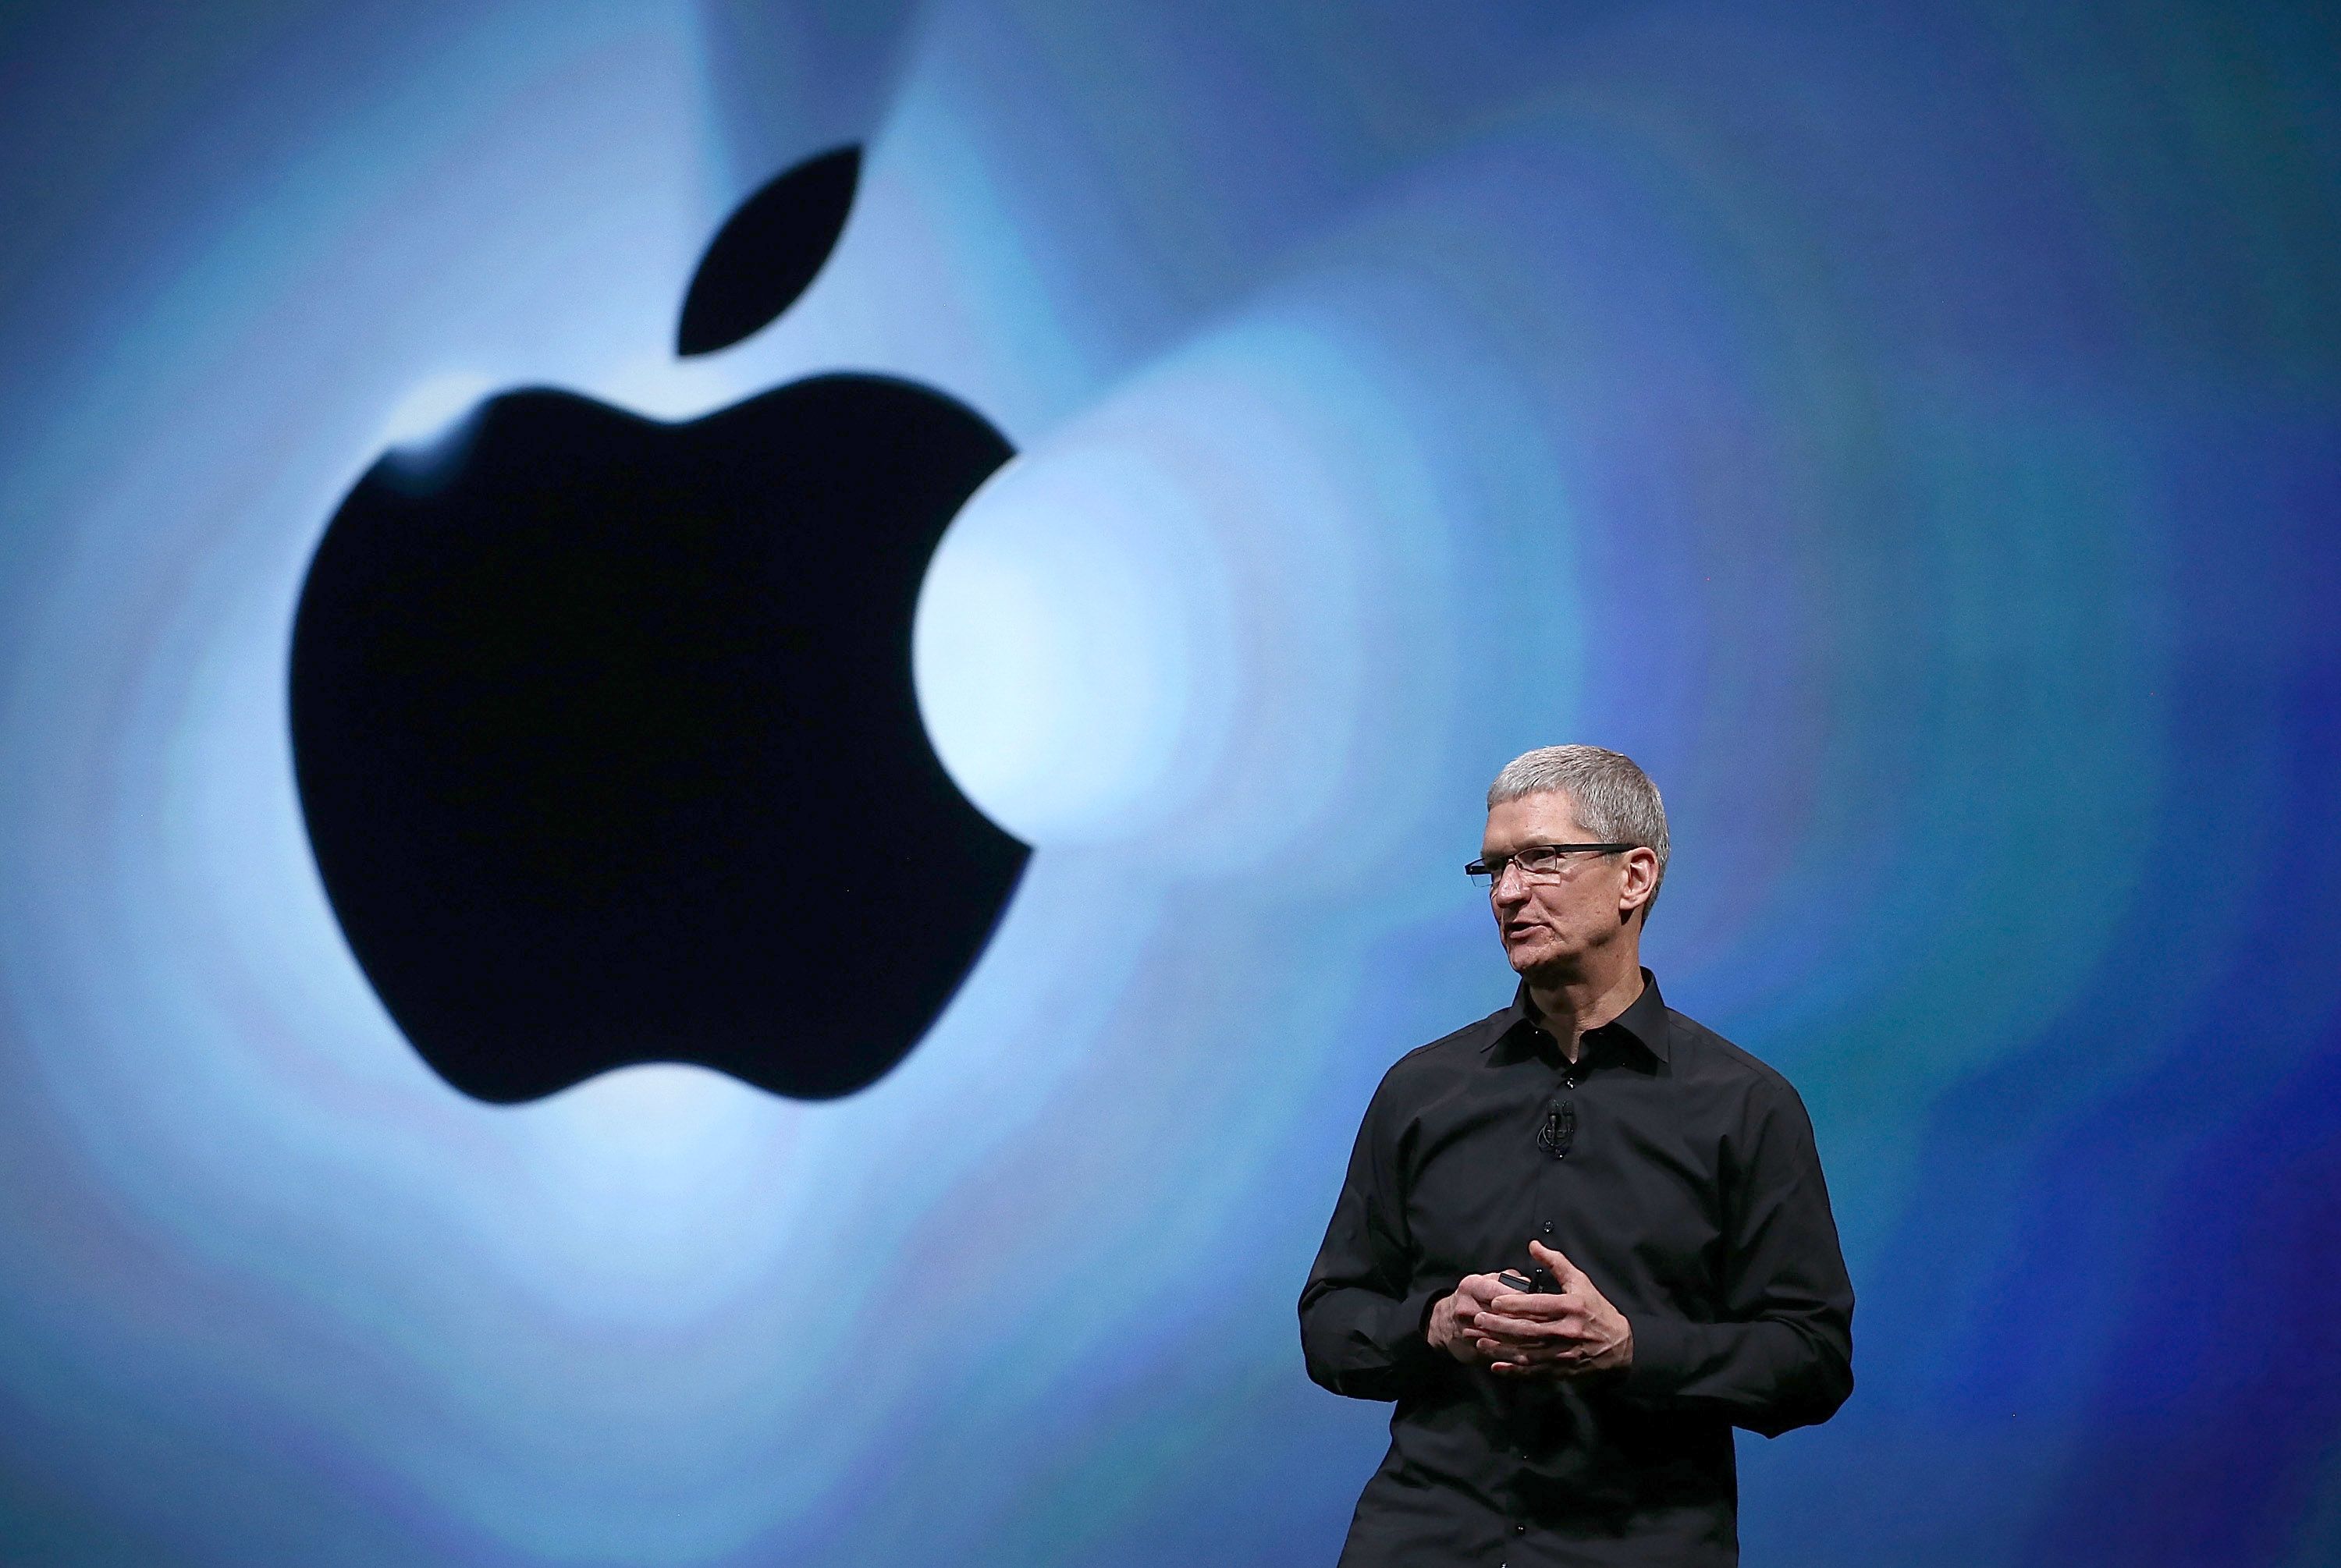 Apple đã thay đổi rất nhiều kể từ khi Tim Cook trở thành CEO của công ty. Hãy cùng xem hình ảnh liên quan để hiểu rõ hơn những thay đổi đó!